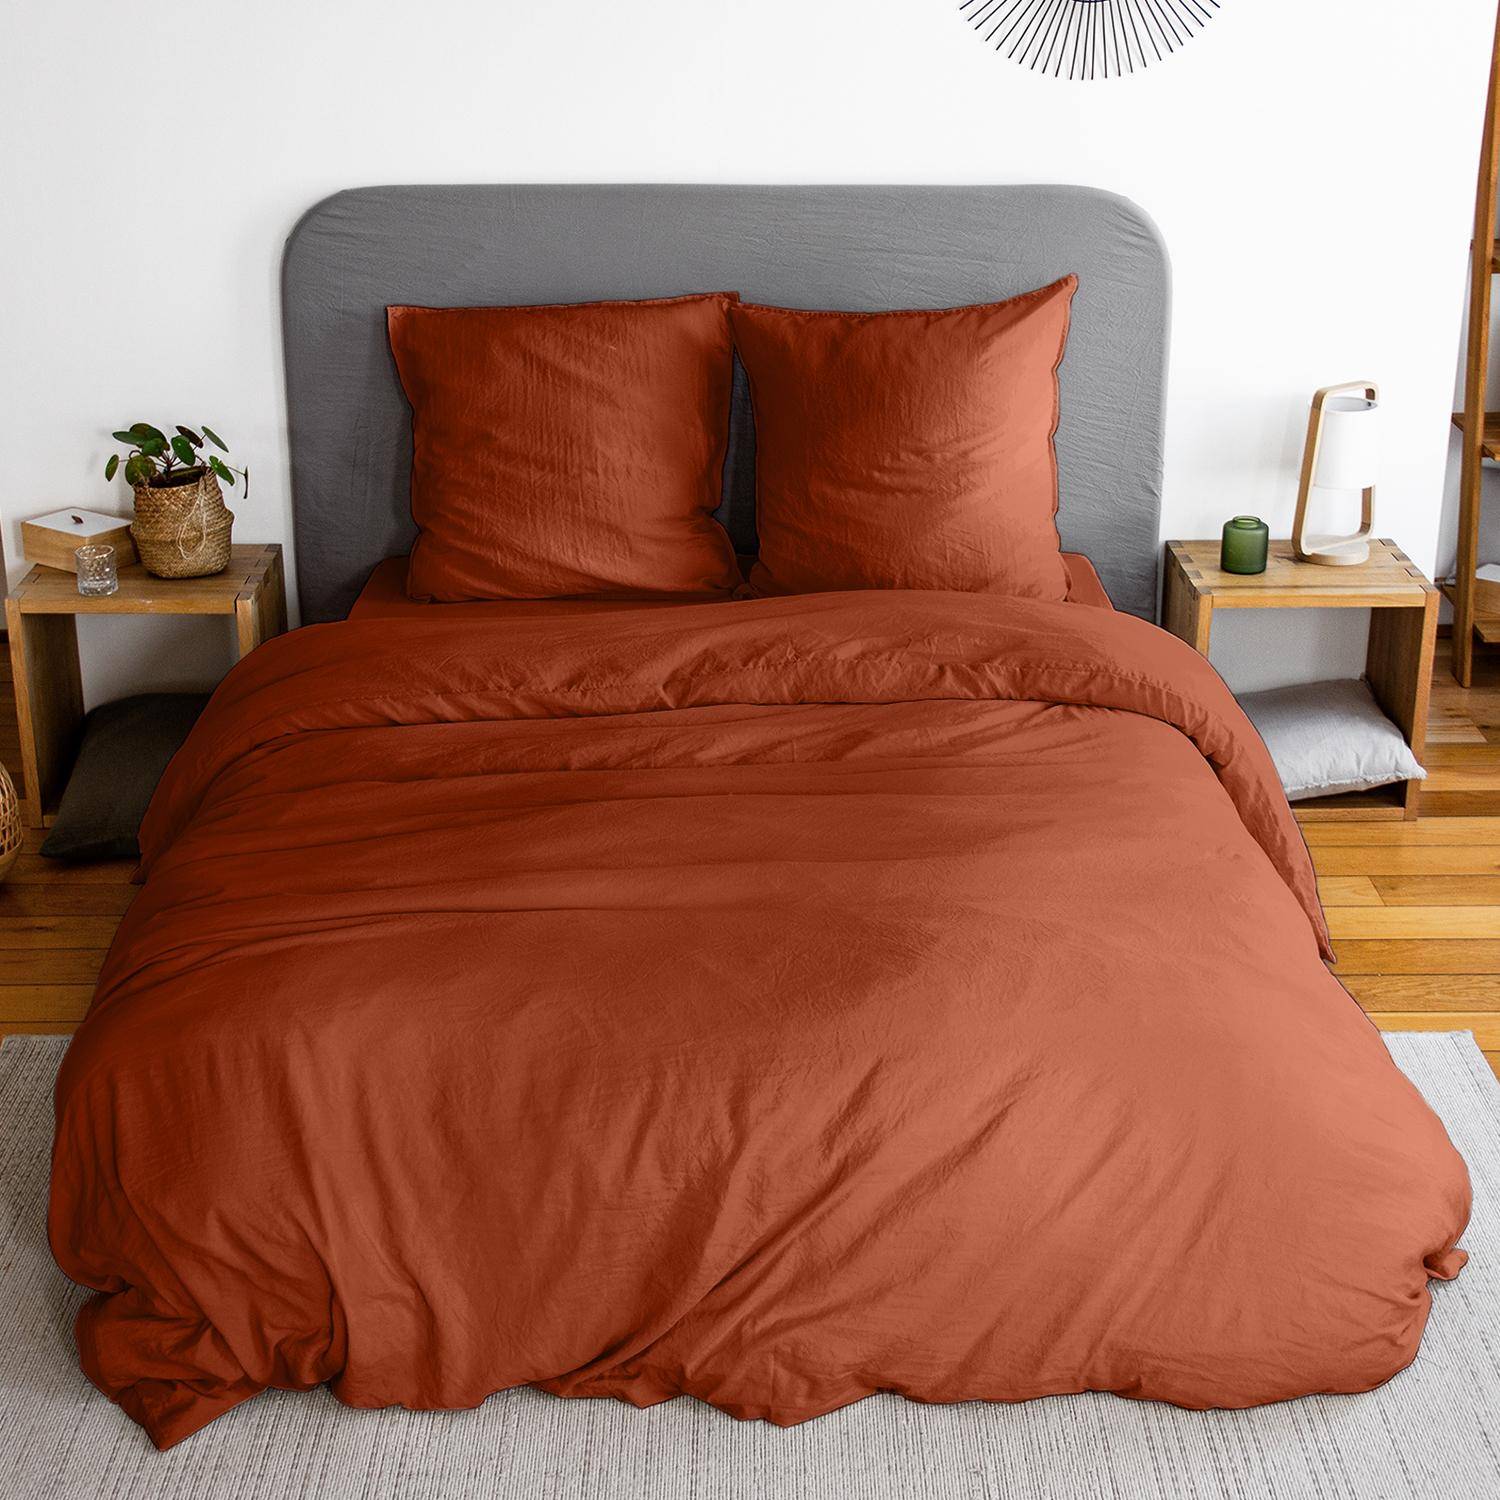 Bettwäsche-Set aus vorgewaschener Mikrofaser in terrakotta 240 x 220 cm für Doppelbetten, 1 Bettbezug und 2 Kissenbezüge Photo1